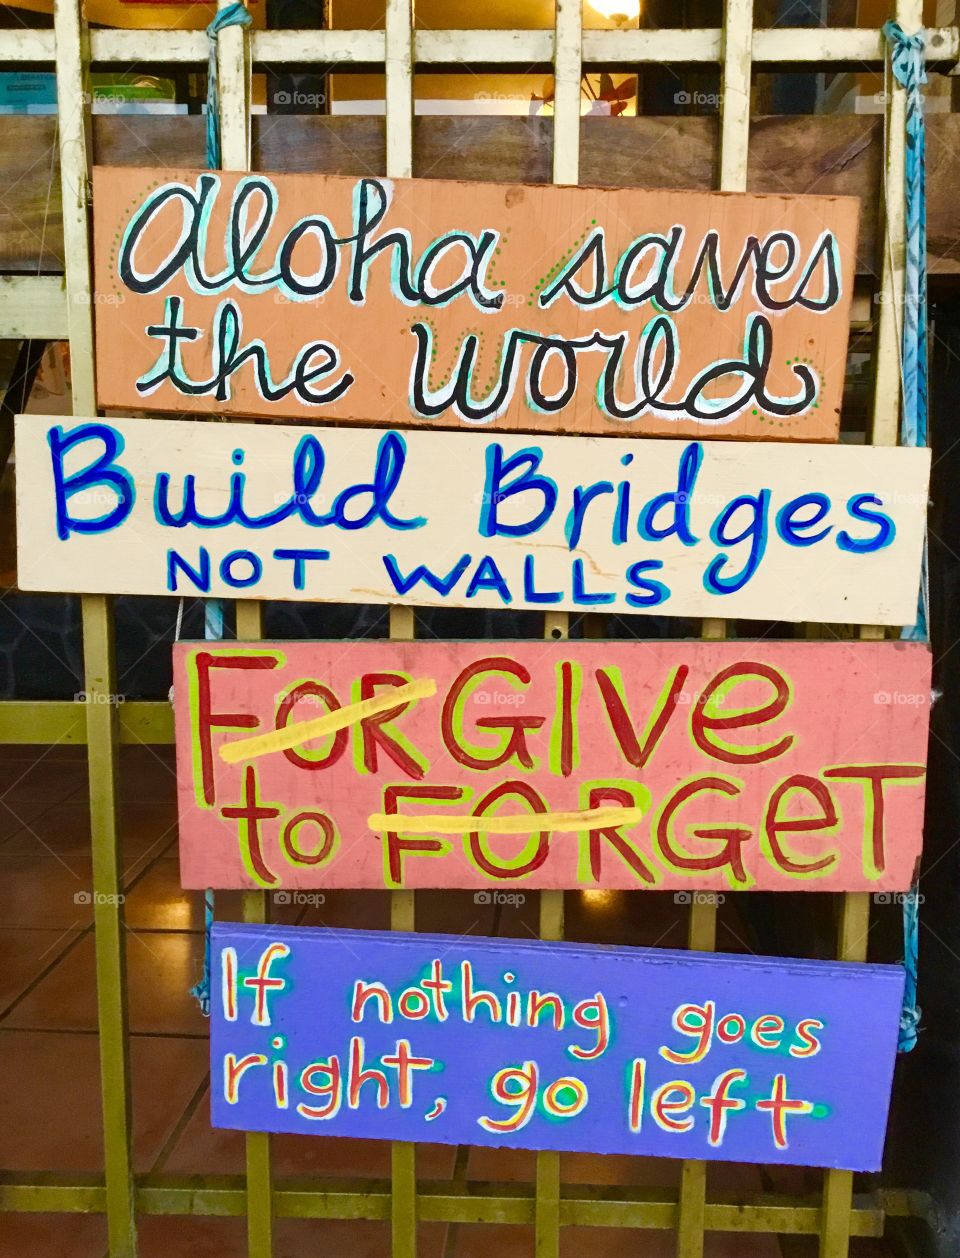 Signs of good in Pahoa, Hawaii